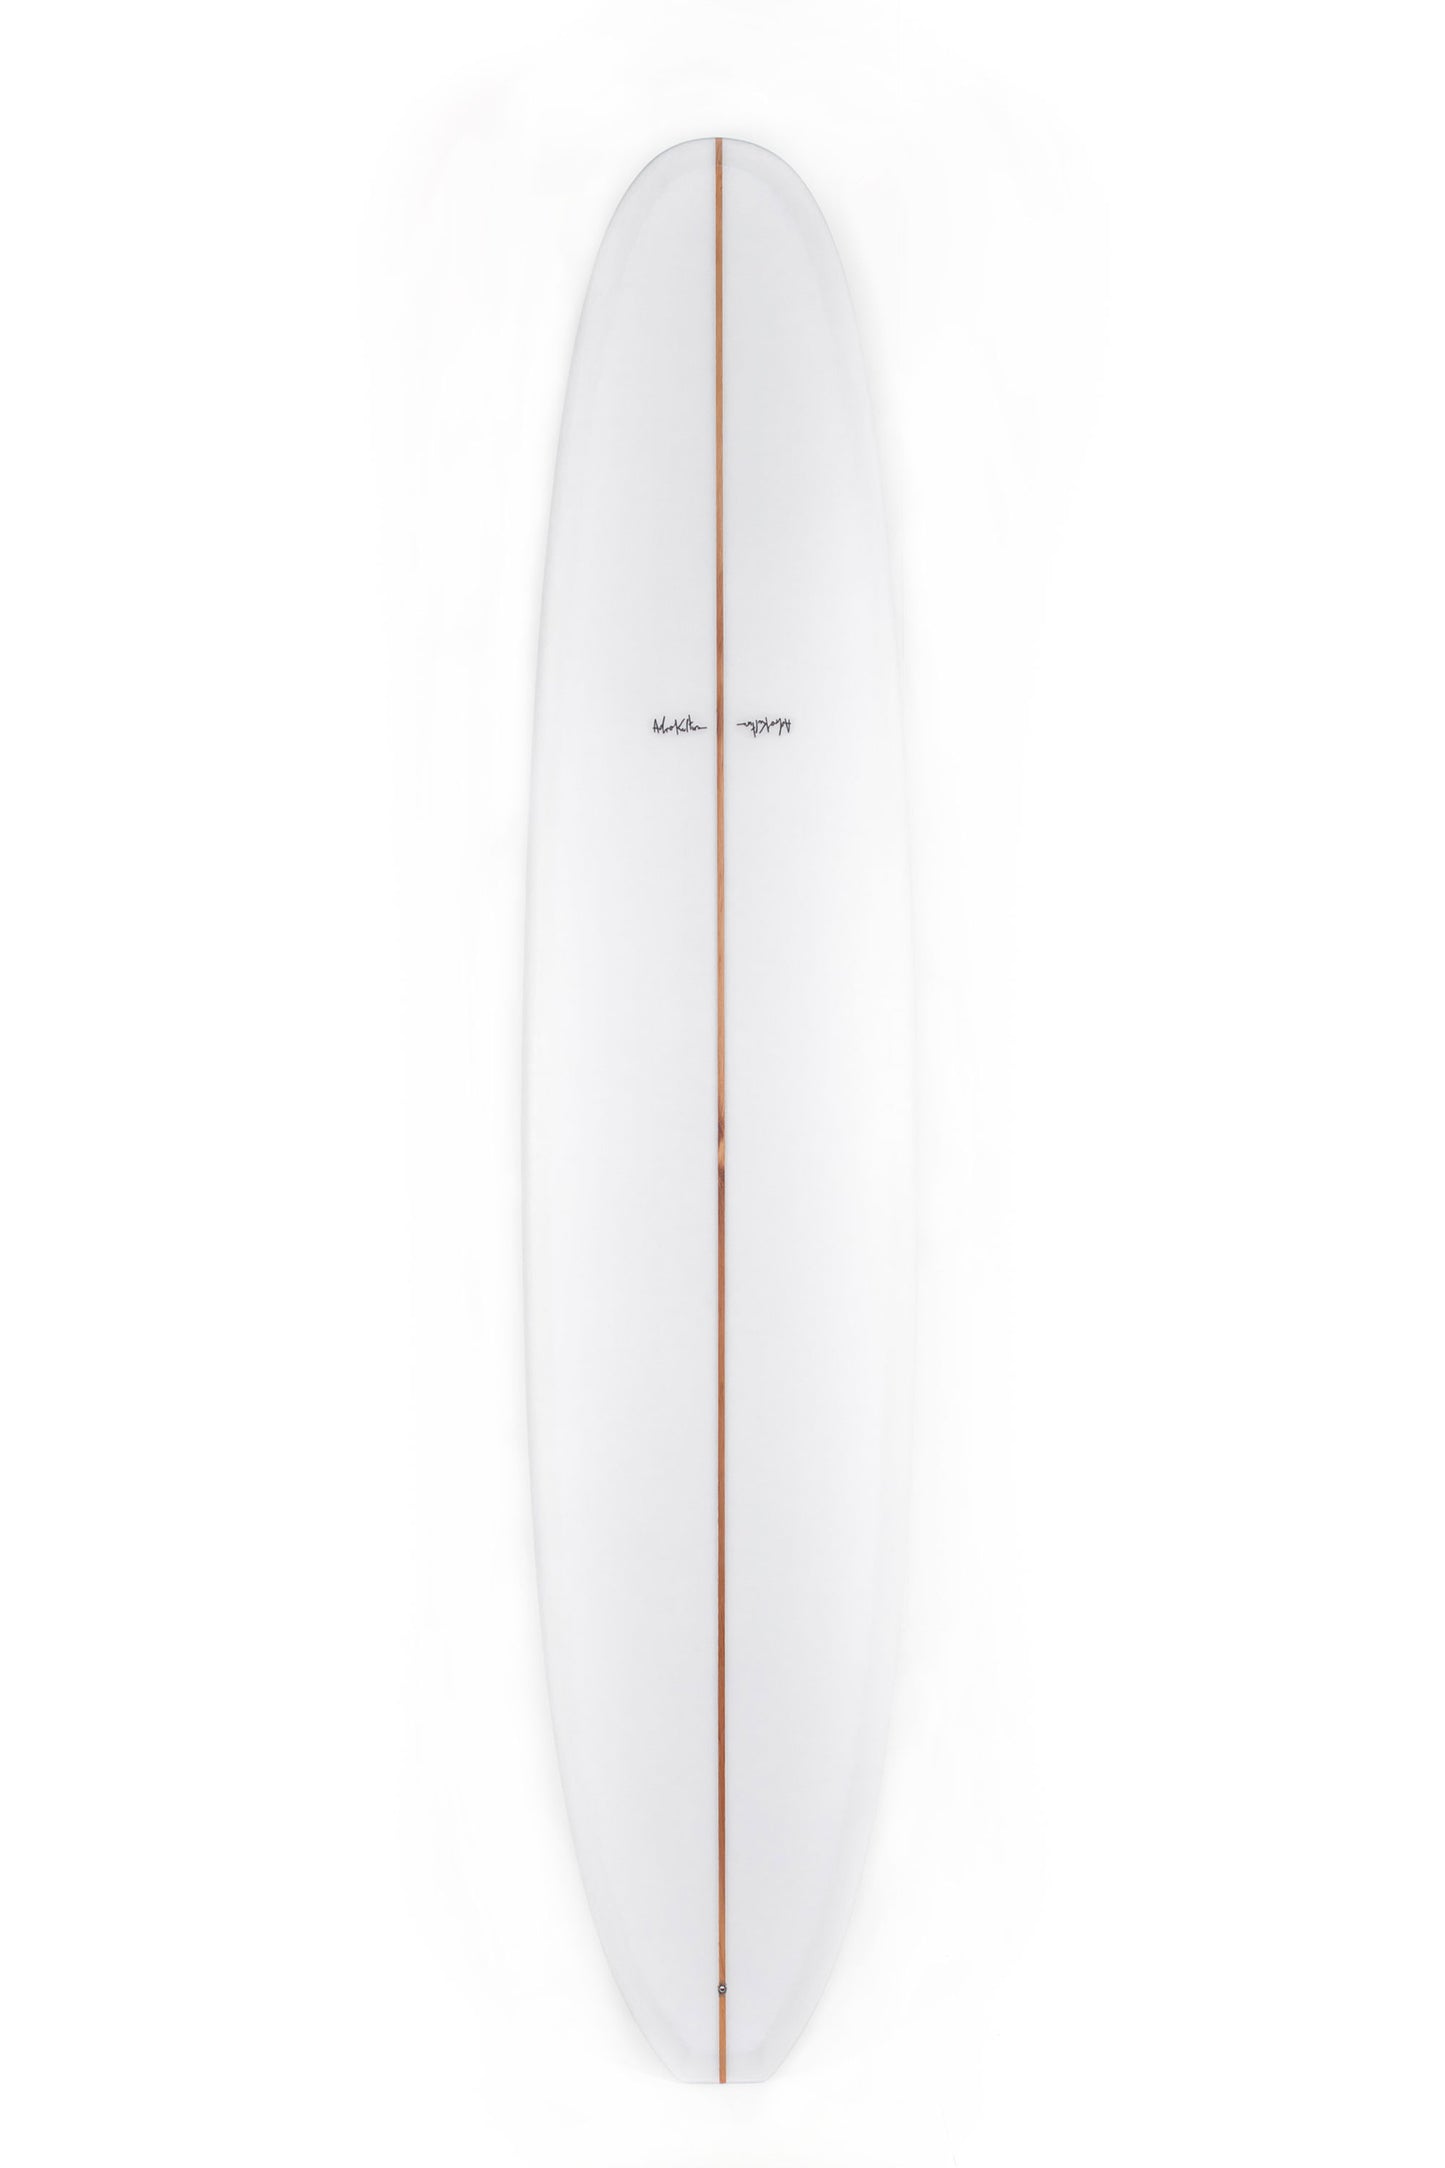 Pukas Surf Shop - Adrokultura Surfboards - BOB'S - 9'2" x 22 1/2 x 2 7/8 - BOBS92